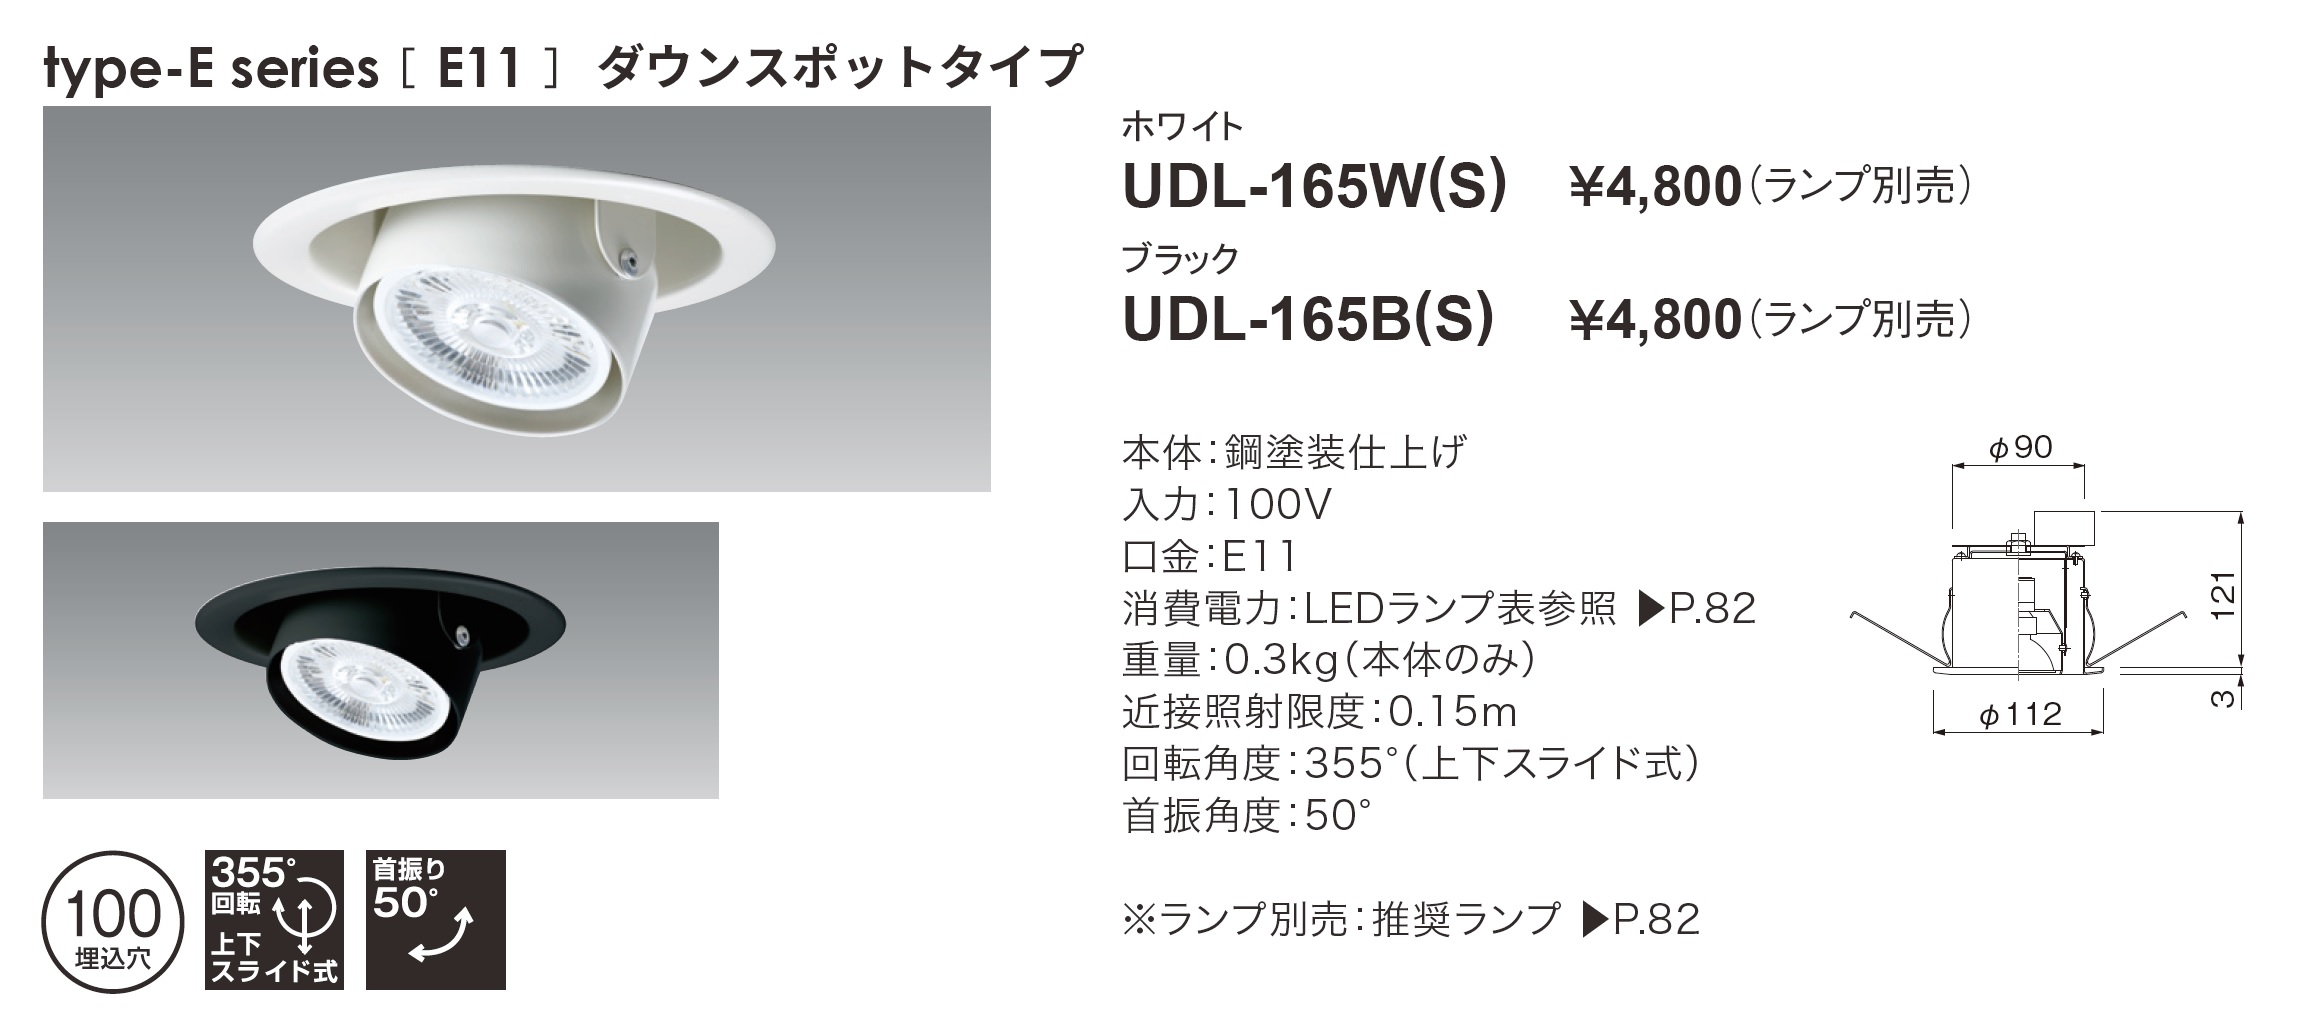 UDL-165B(S) | 製品情報 | 株式会社ユニティ